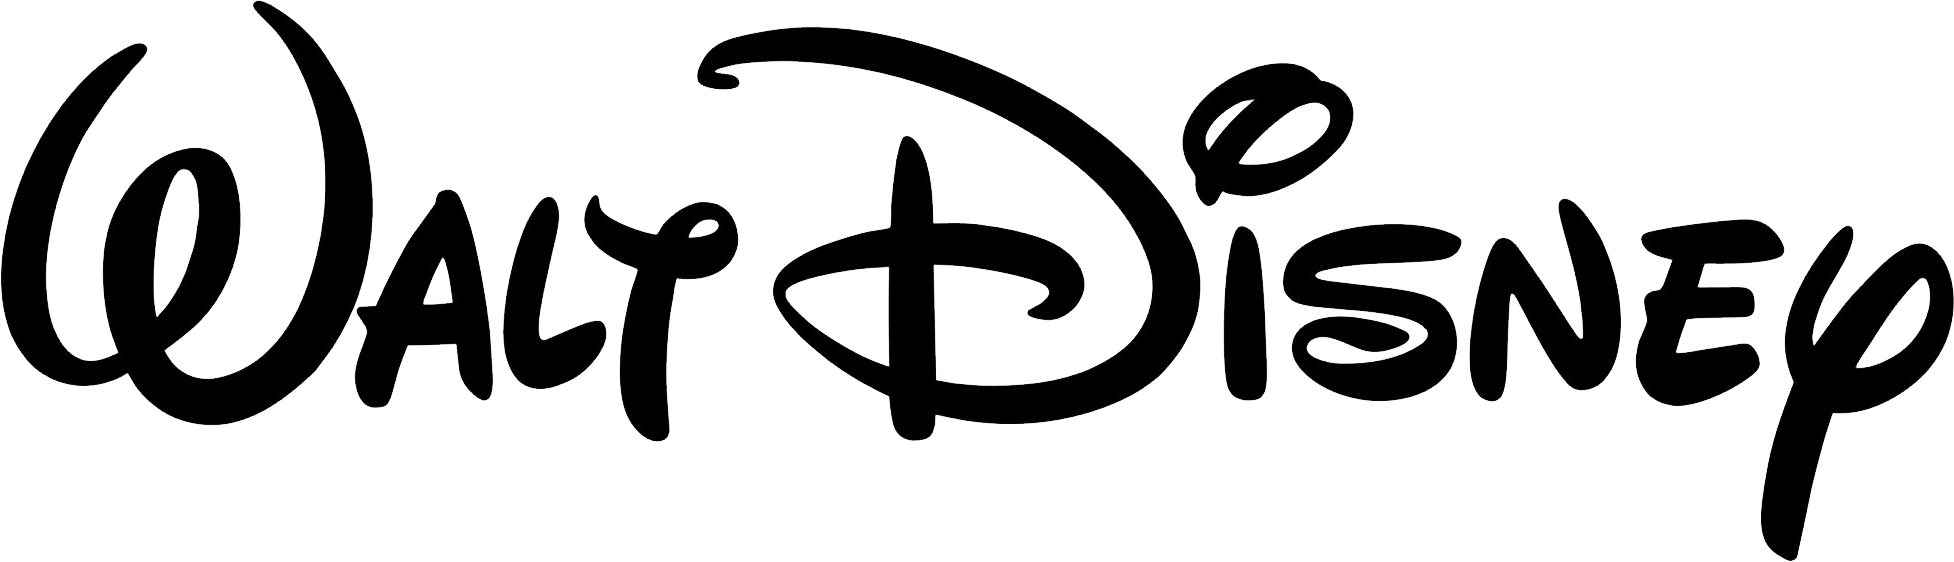 Walt disney logo PNG Gambar latar belakang Transparan